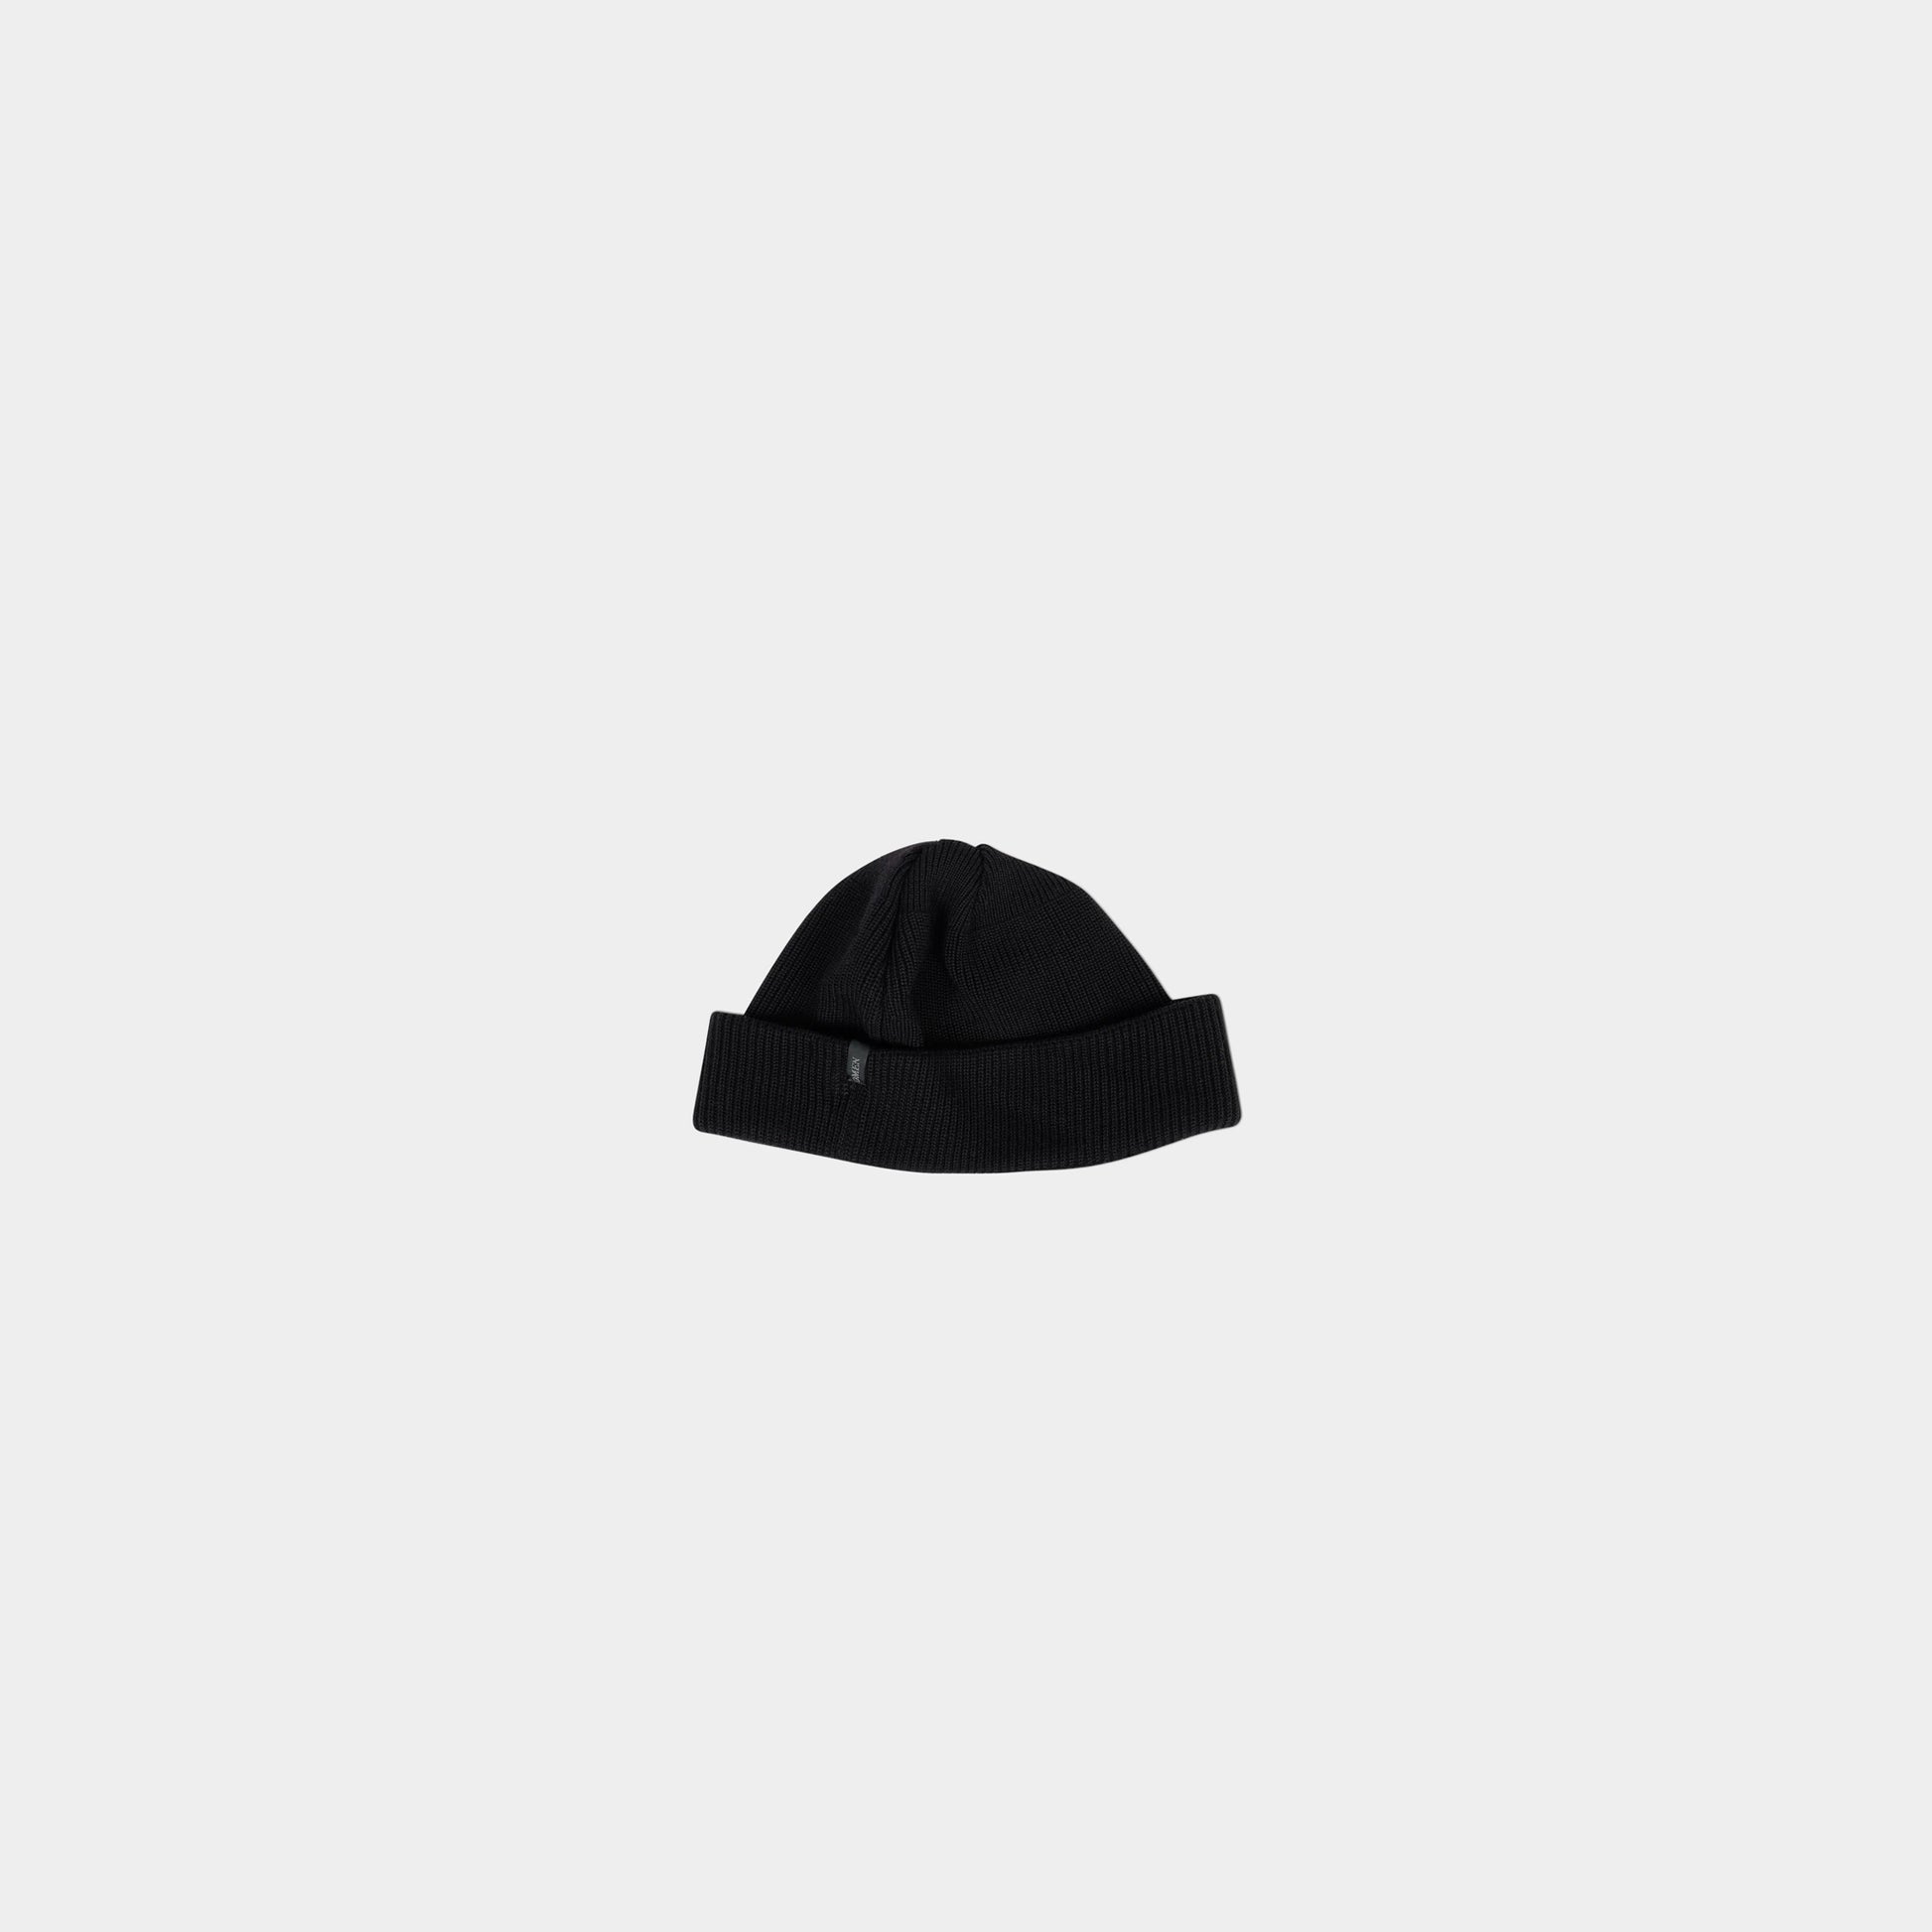 OMEN Mütze Seemann in der Farbe schwarz